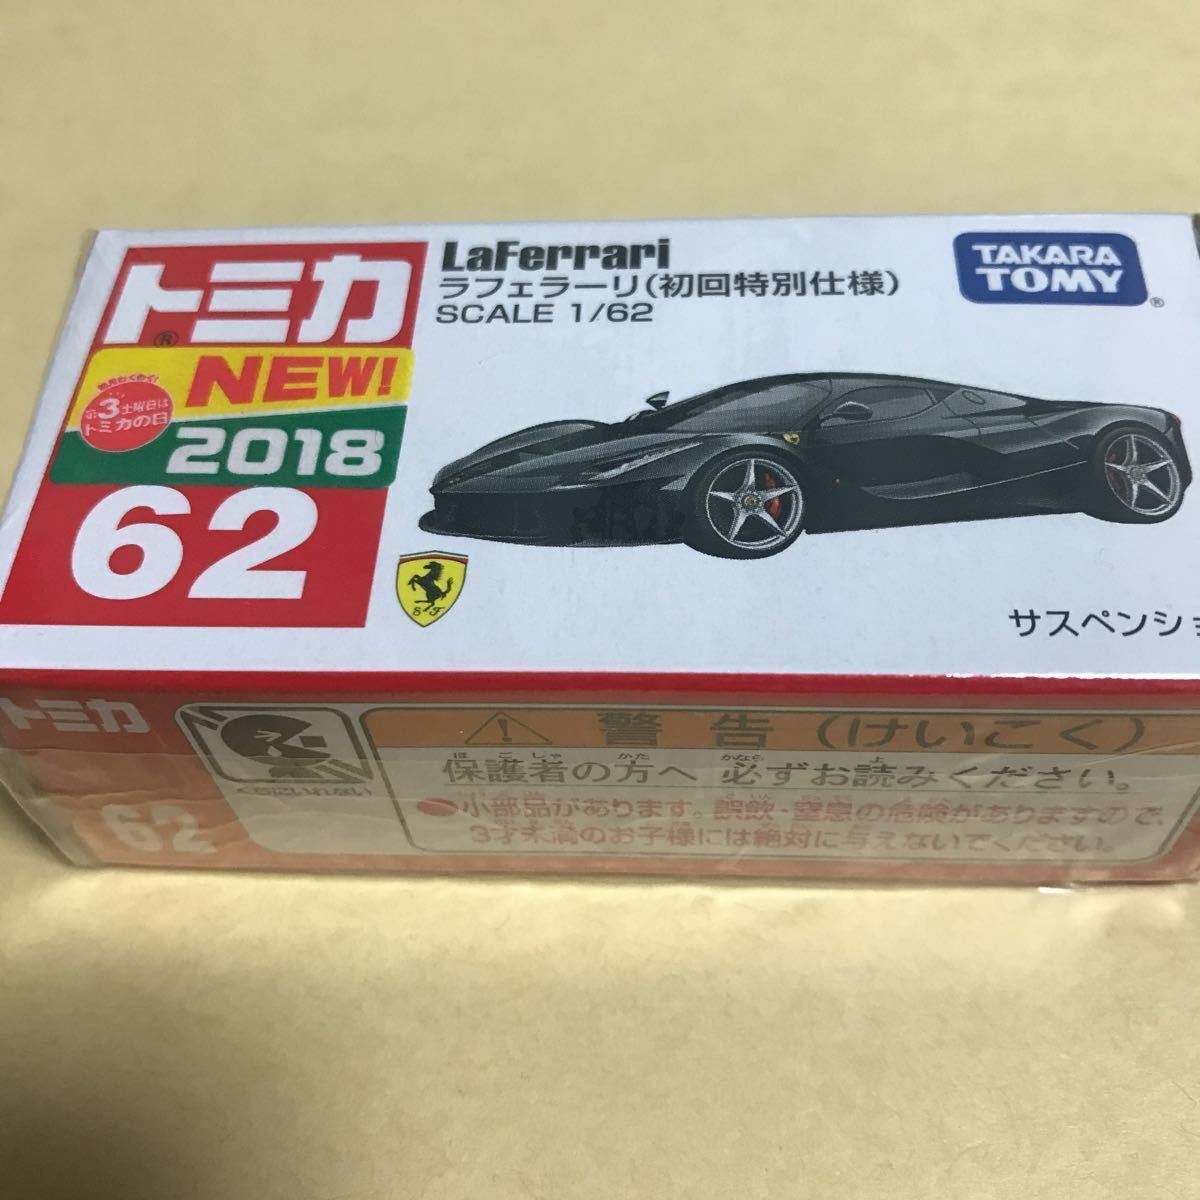 新文章Tomica 62 La Ferrari（初始特殊規格）SCALE 1/62黑色⑭ 原文:新品 トミカ 62 ラフェラーリ （初回特別仕様） SCALE1/62 黒 ⑭